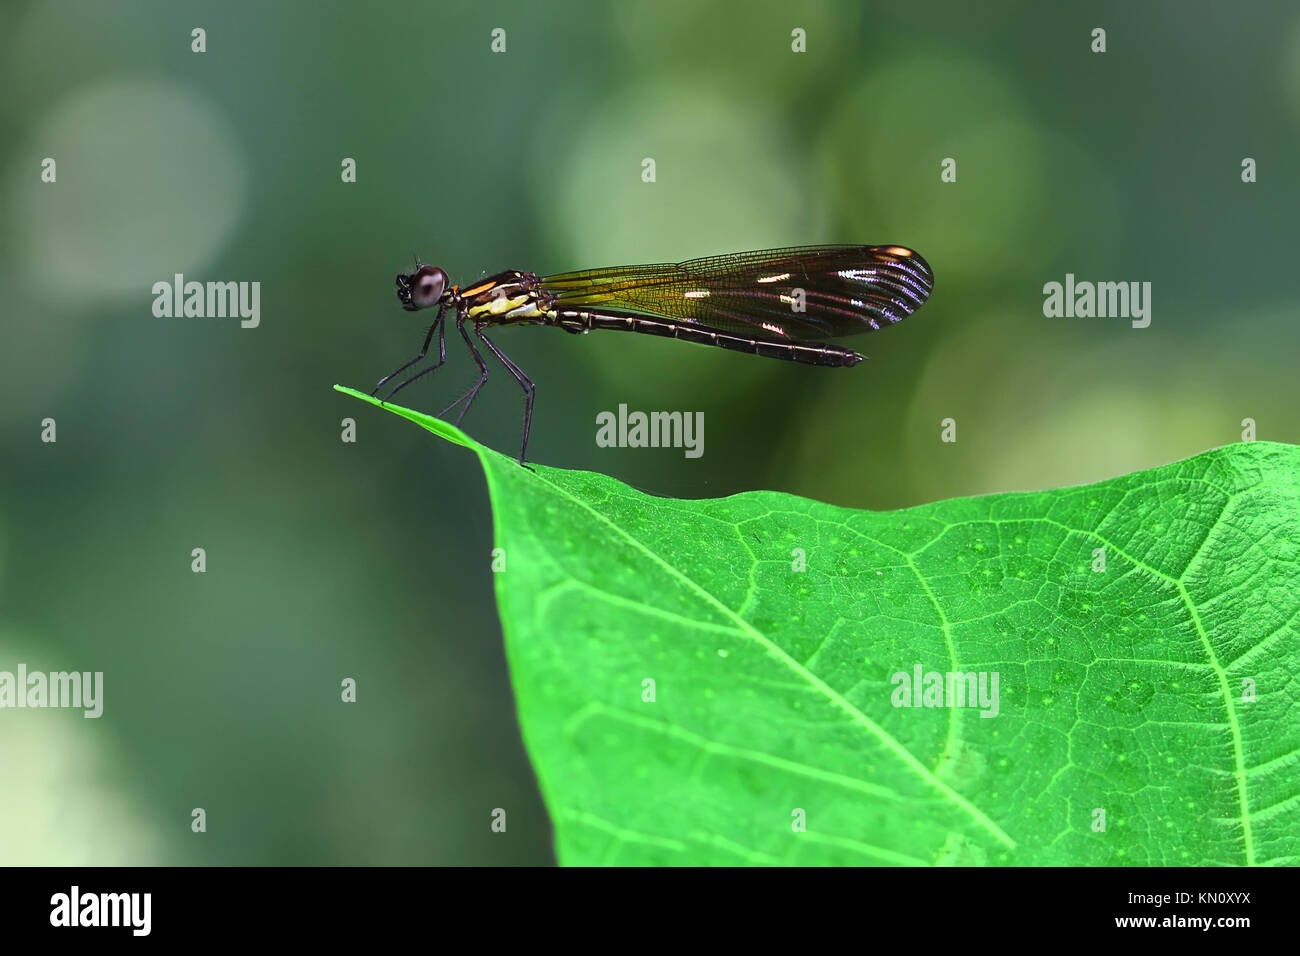 Damselfy Orange/Dragon Fly/Zygoptera avec ailes colorés assis sur le bord de feuille verte Banque D'Images